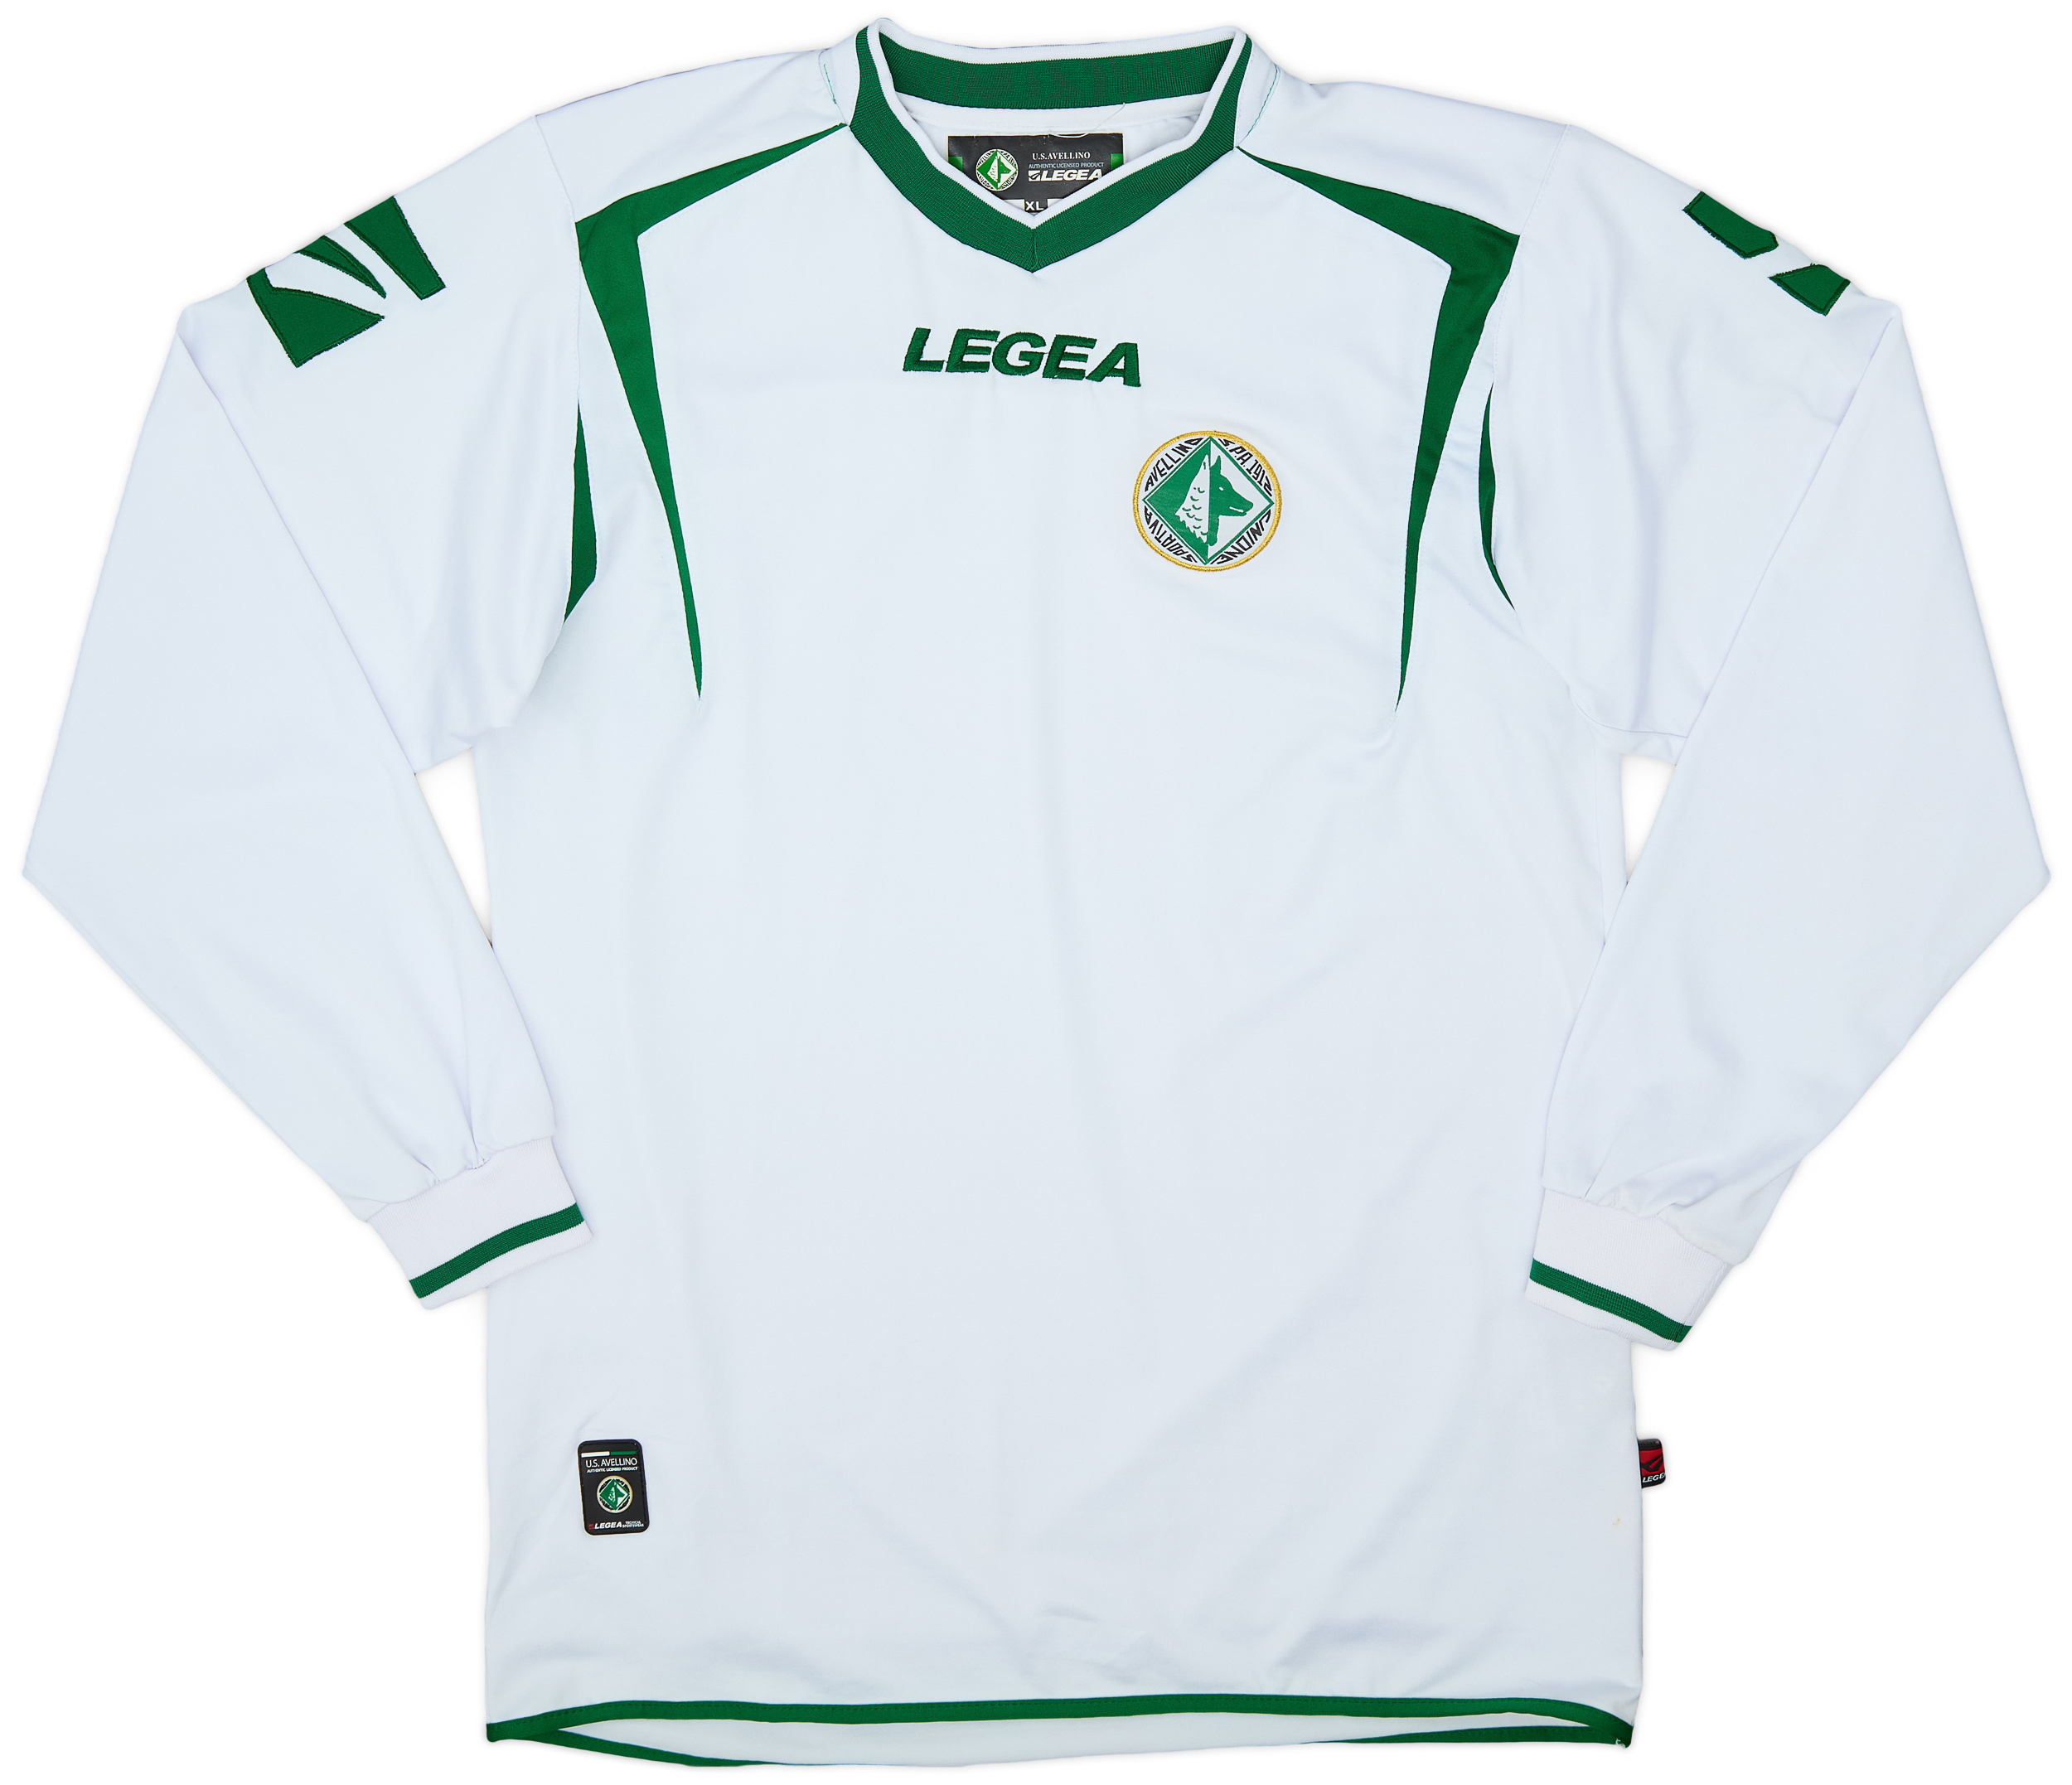 2008-09 Avellino Away Shirt - 8/10 - ()